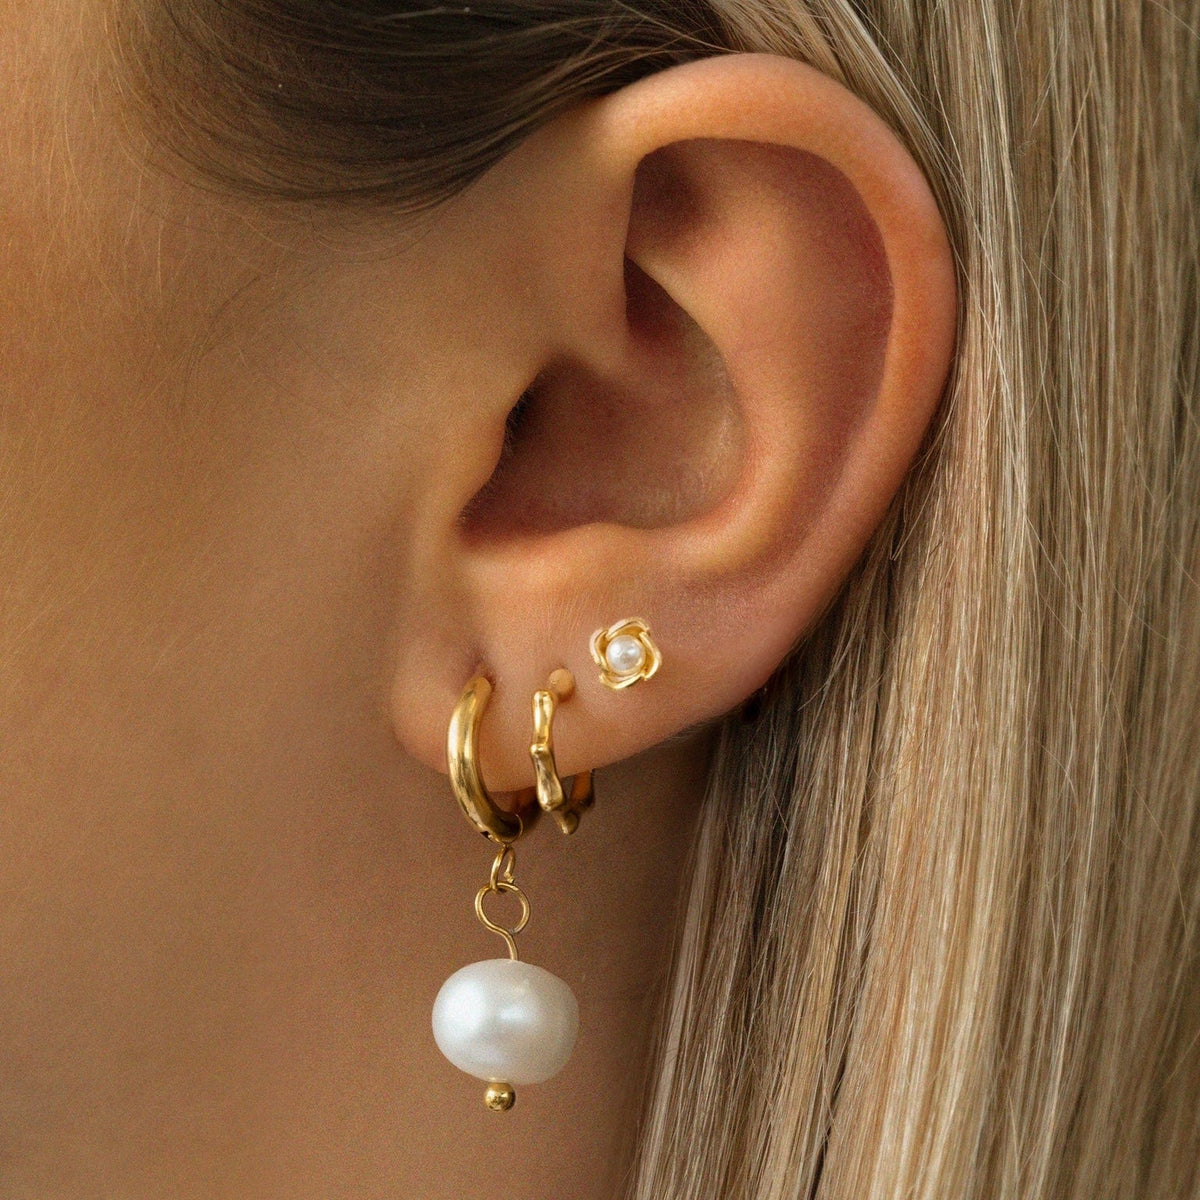 BohoMoon Stainless Steel Coral Pearl Hoop Earrings